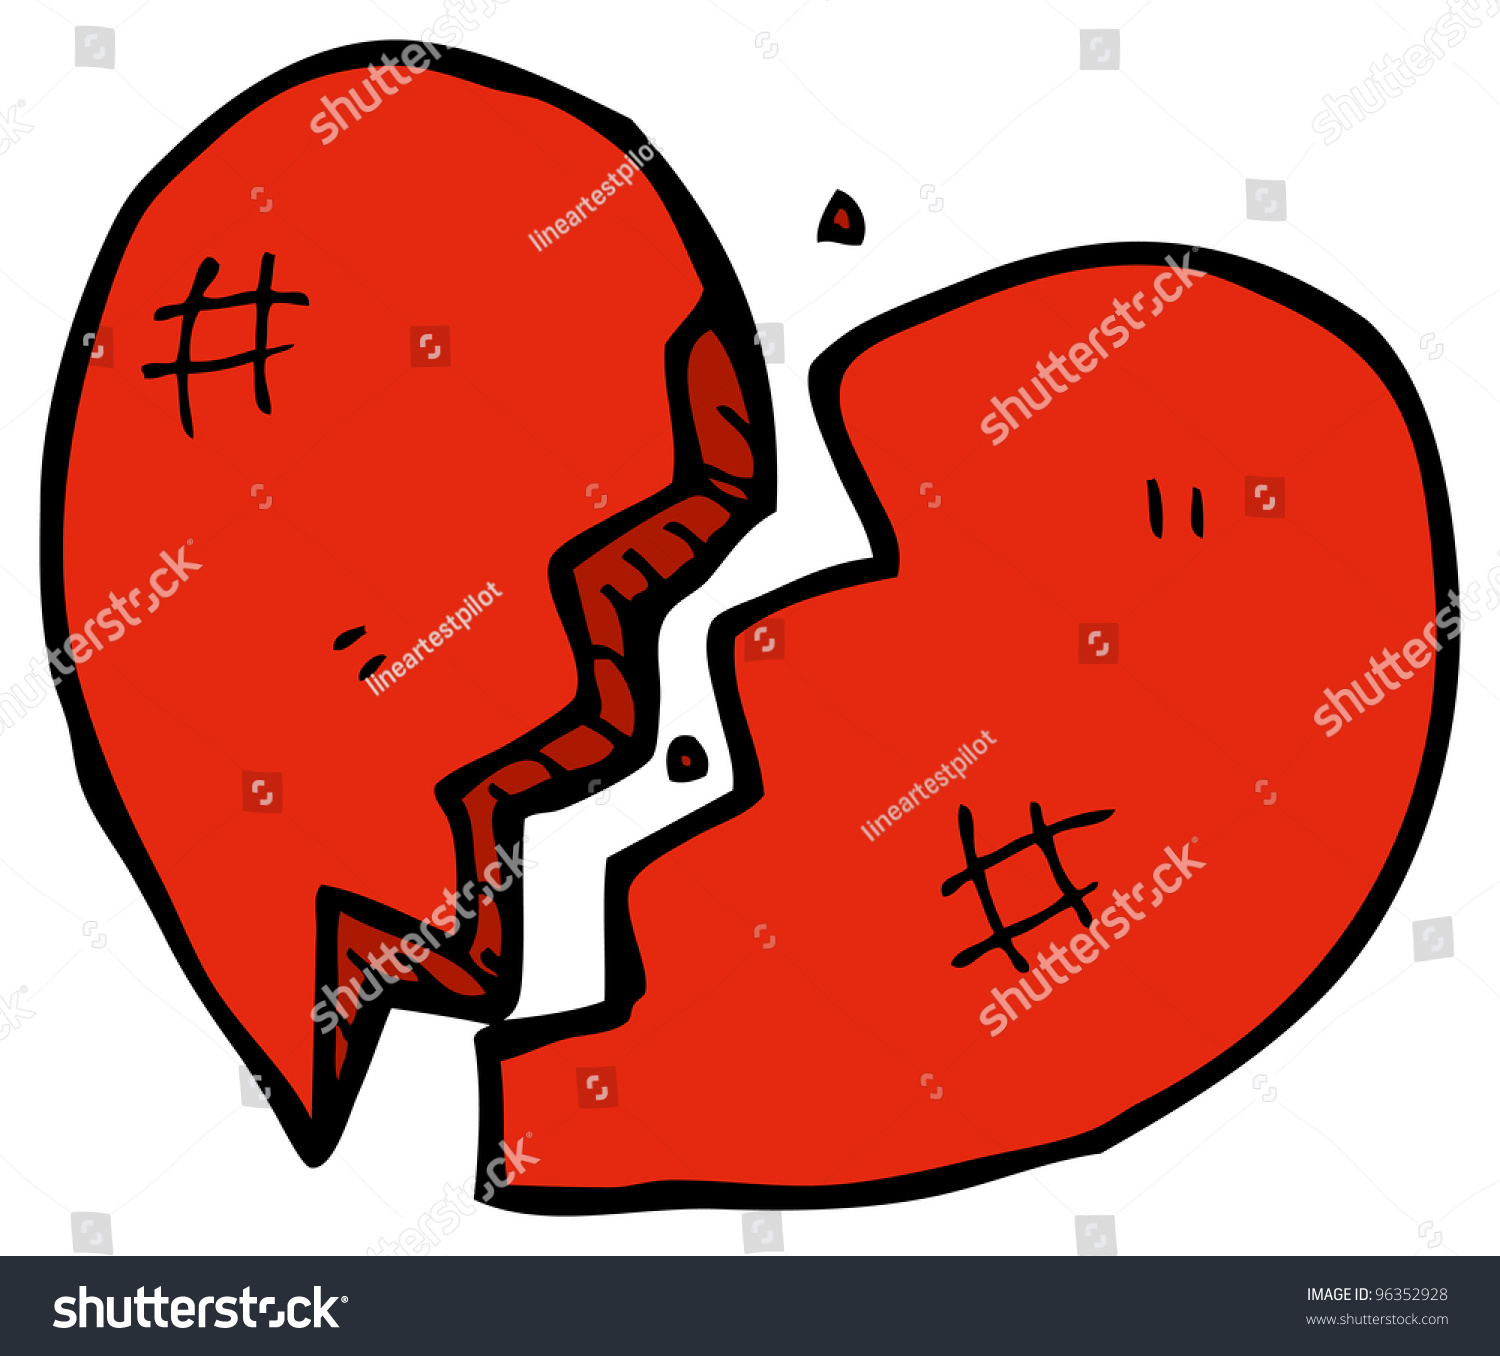 Broken Heart Cartoon Stock Illustration 96352928 - Shutterstock